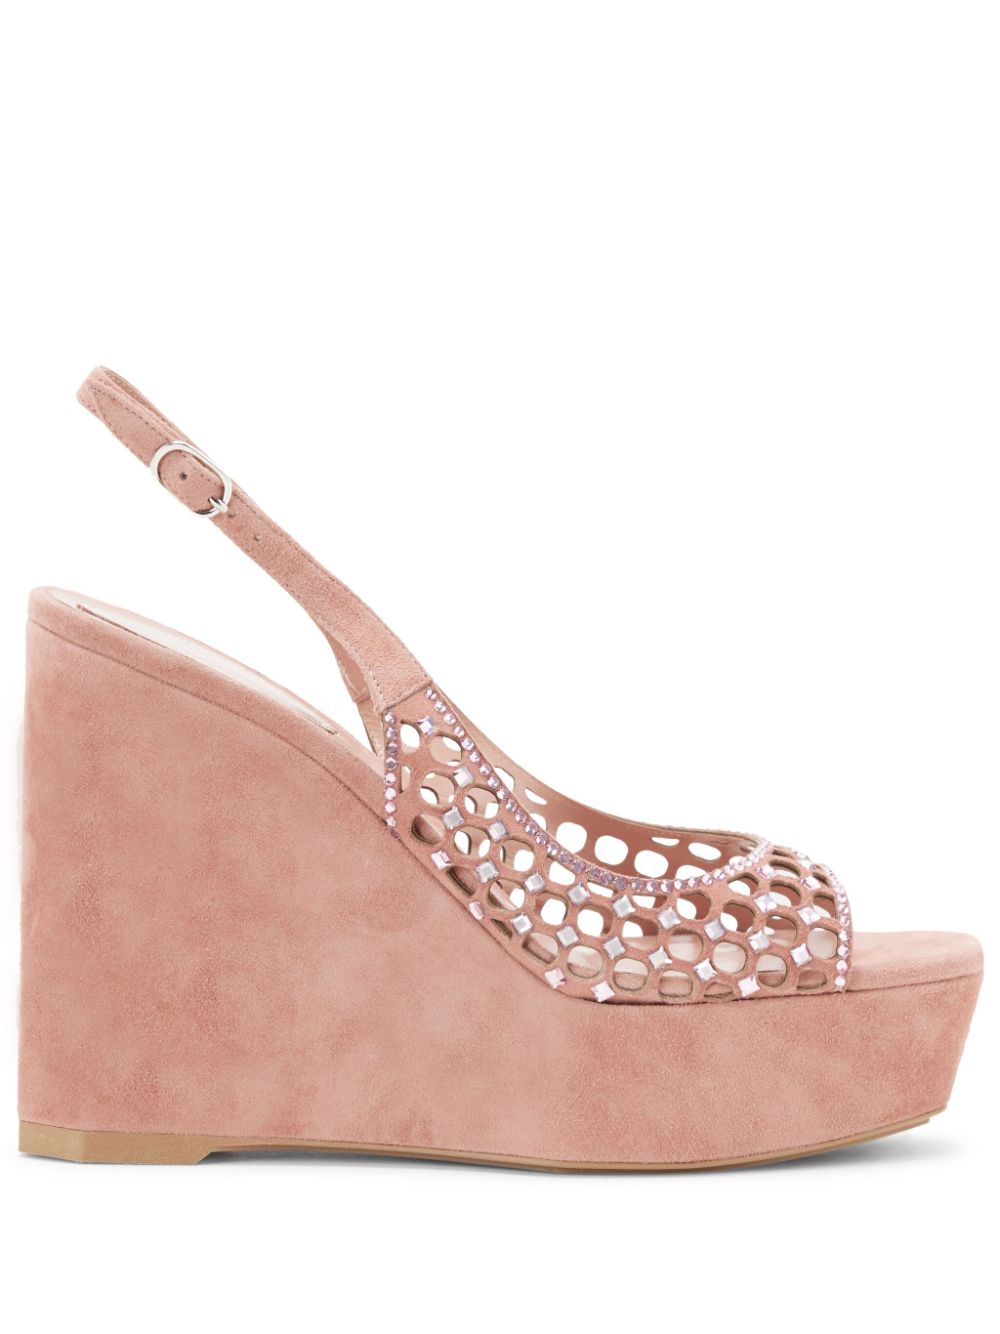 René Caovilla 125mm crystal-embellished sandals Pink